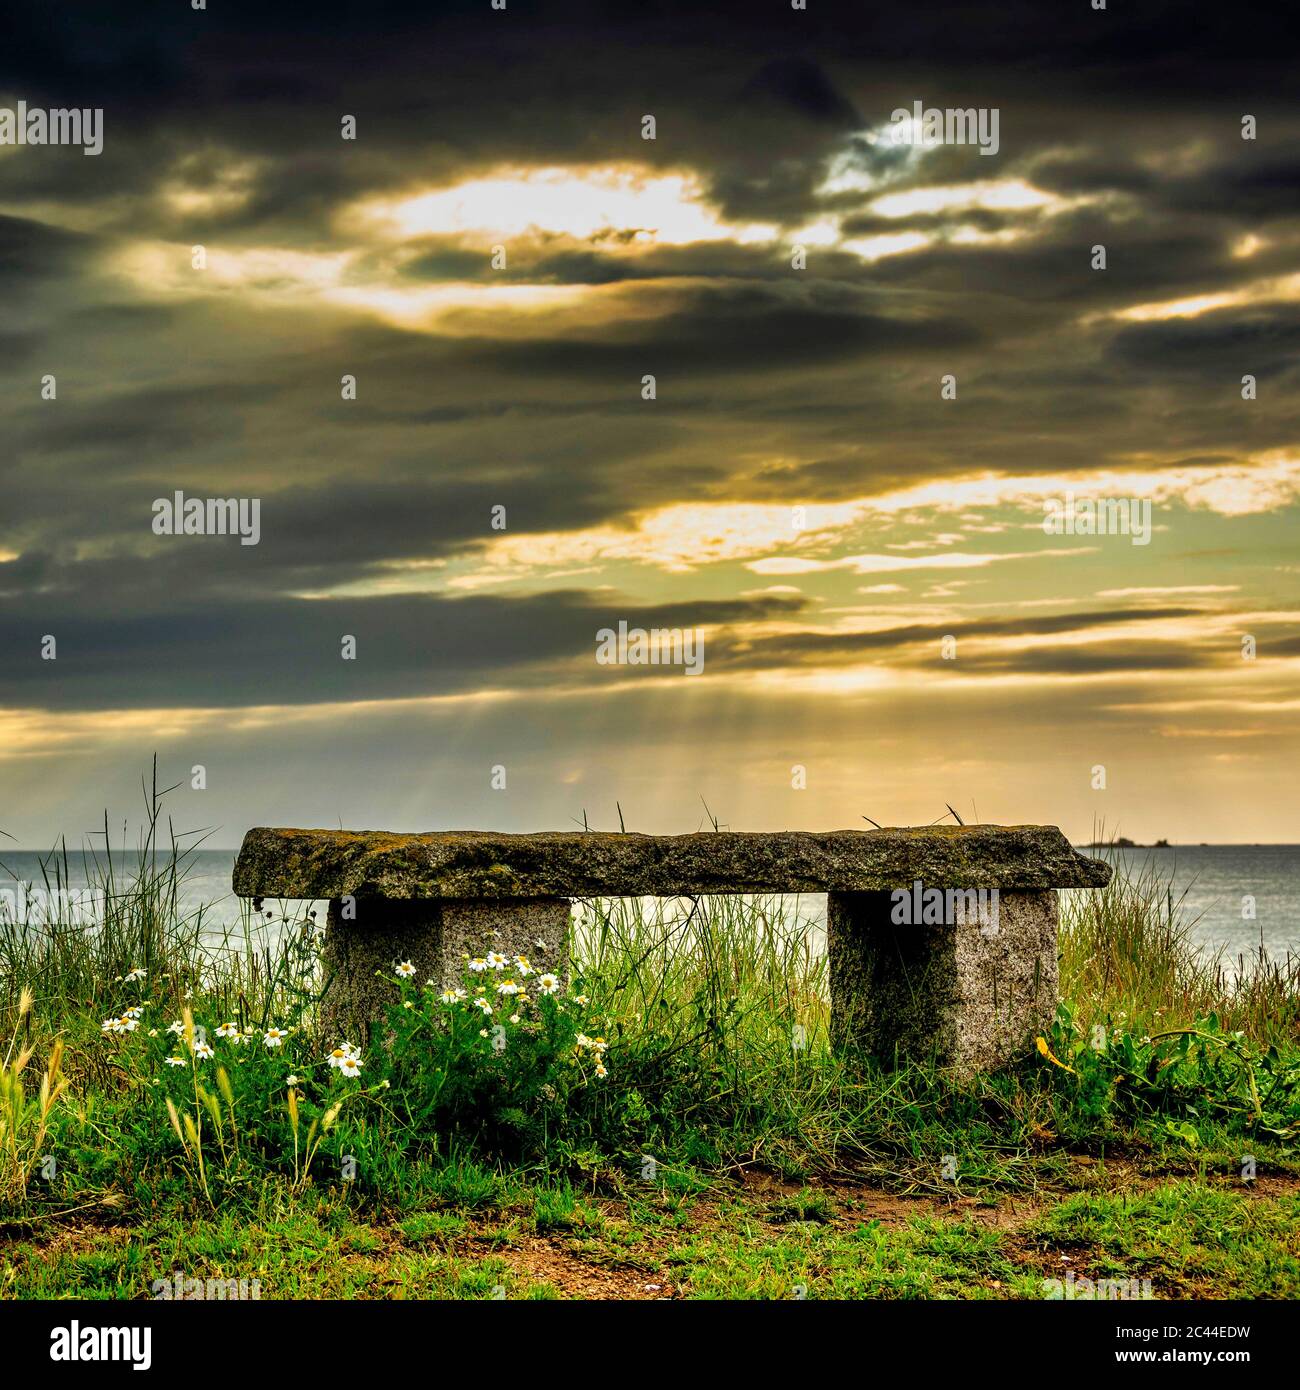 Banc de pierre au coucher du soleil, Pleubian, Côtes d'Armor, Bretagne, France Banque D'Images